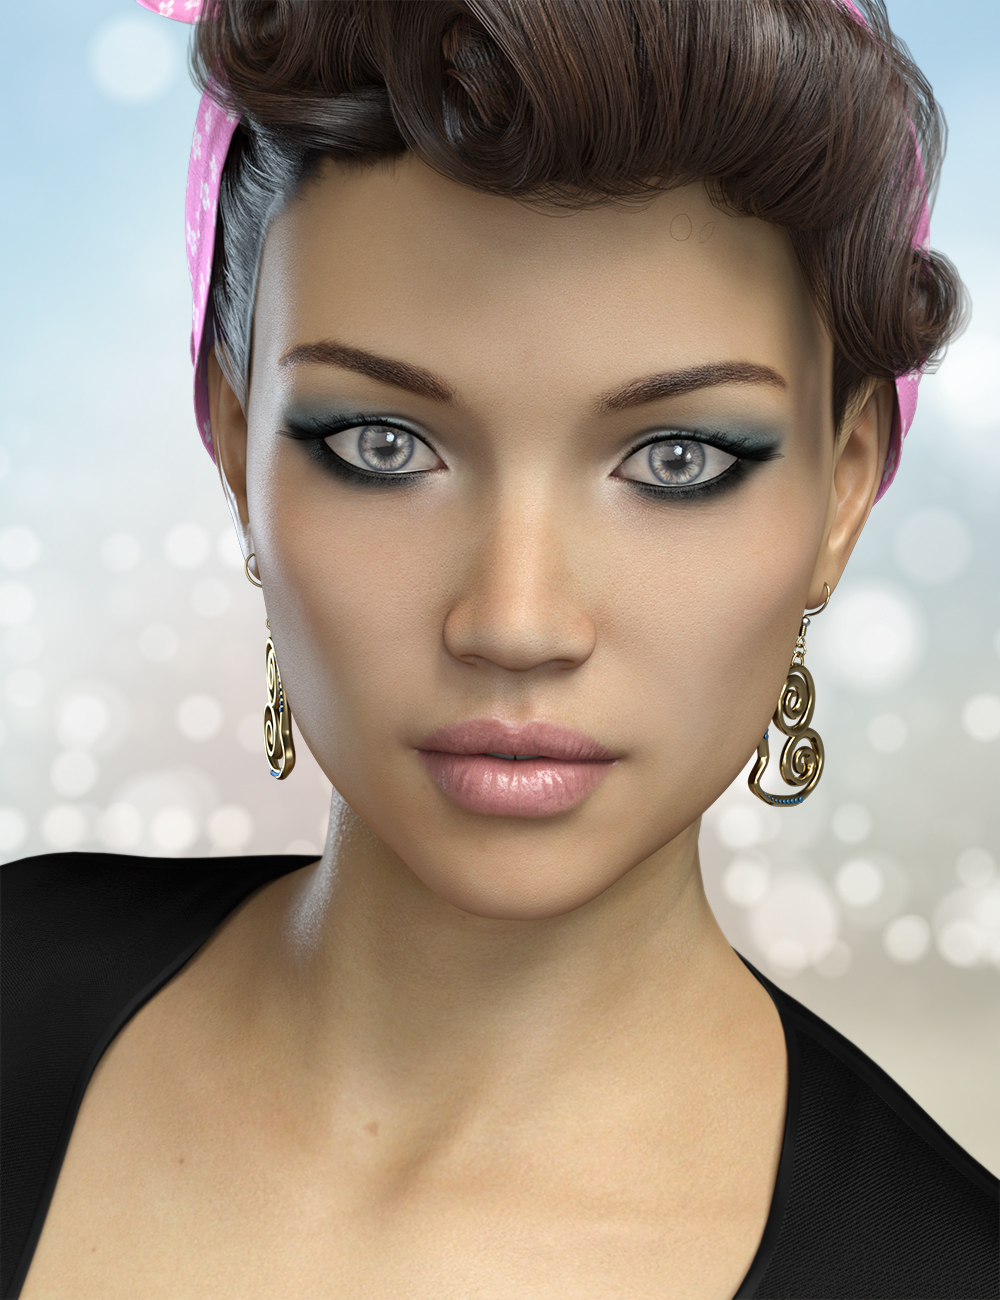 FWSA Sophia HD for Penny 8 by: Fred Winkler ArtSabby, 3D Models by Daz 3D